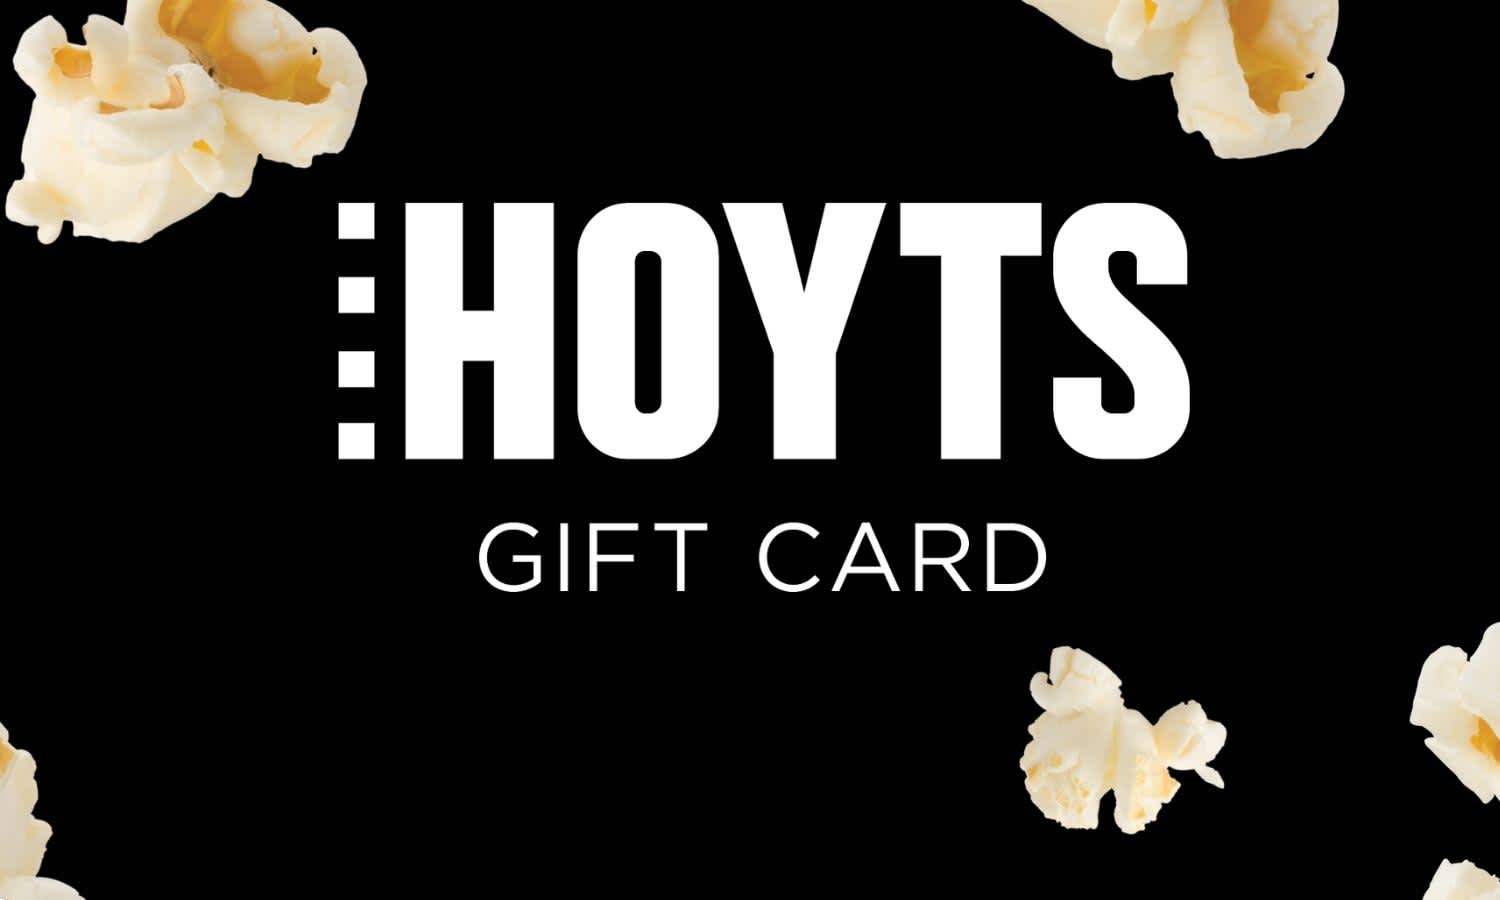 Hoyts gift card